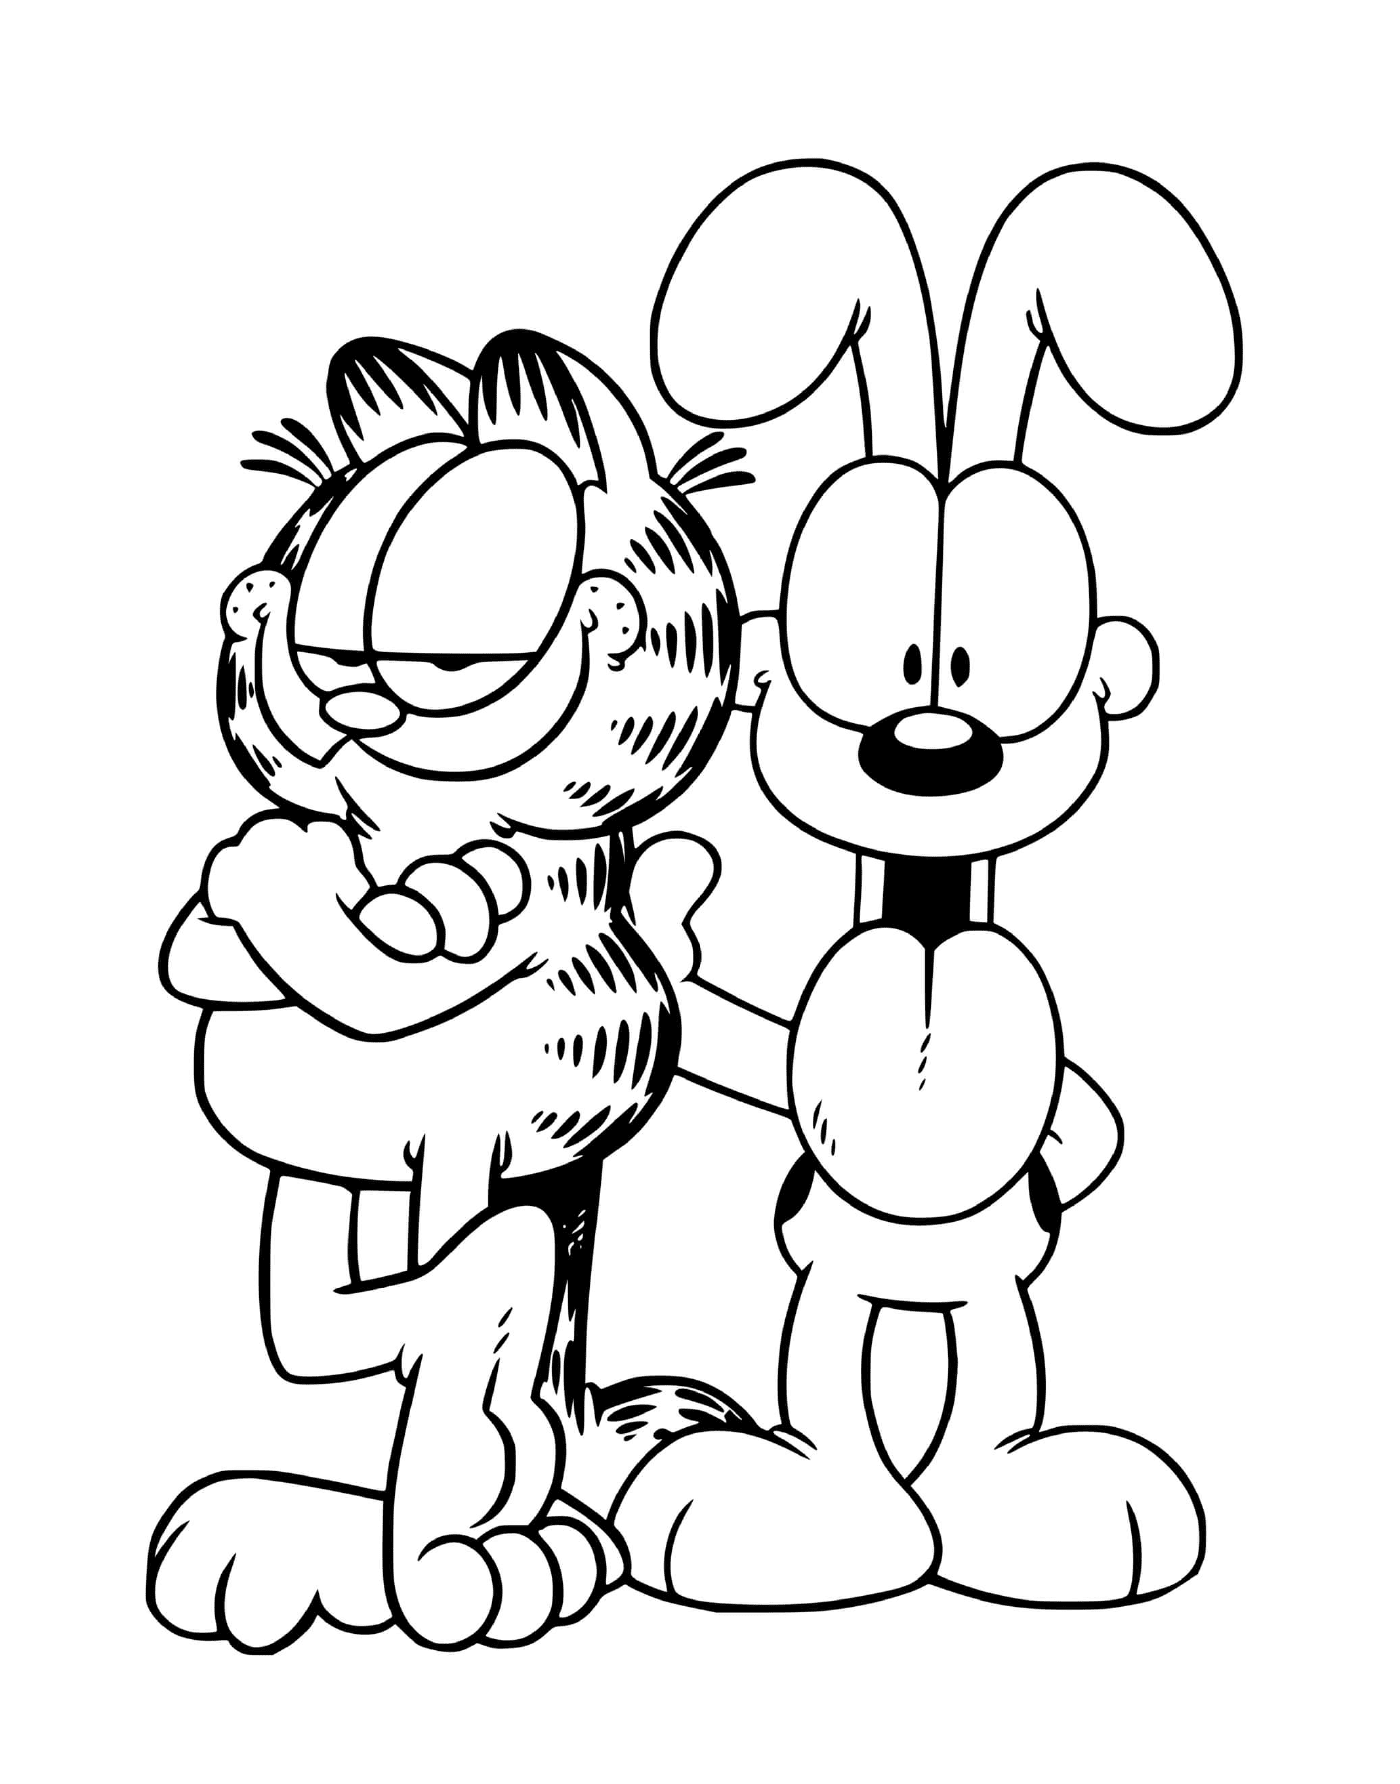  Garfield e Odie, migliori amici 